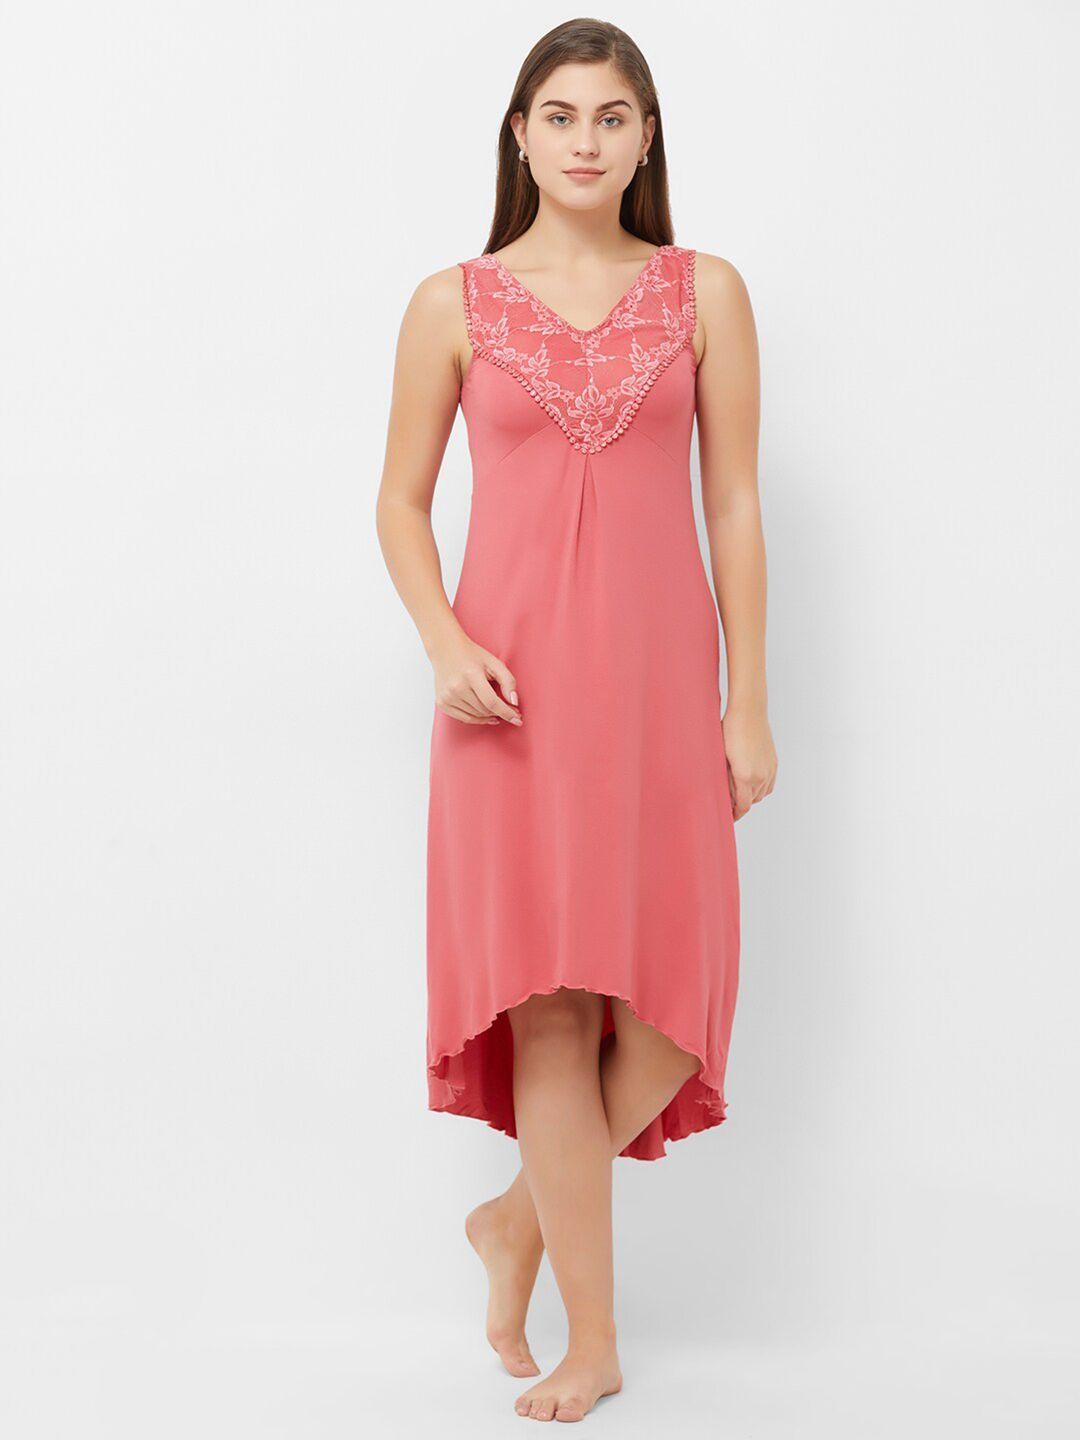 soie-women-pink-nightdress